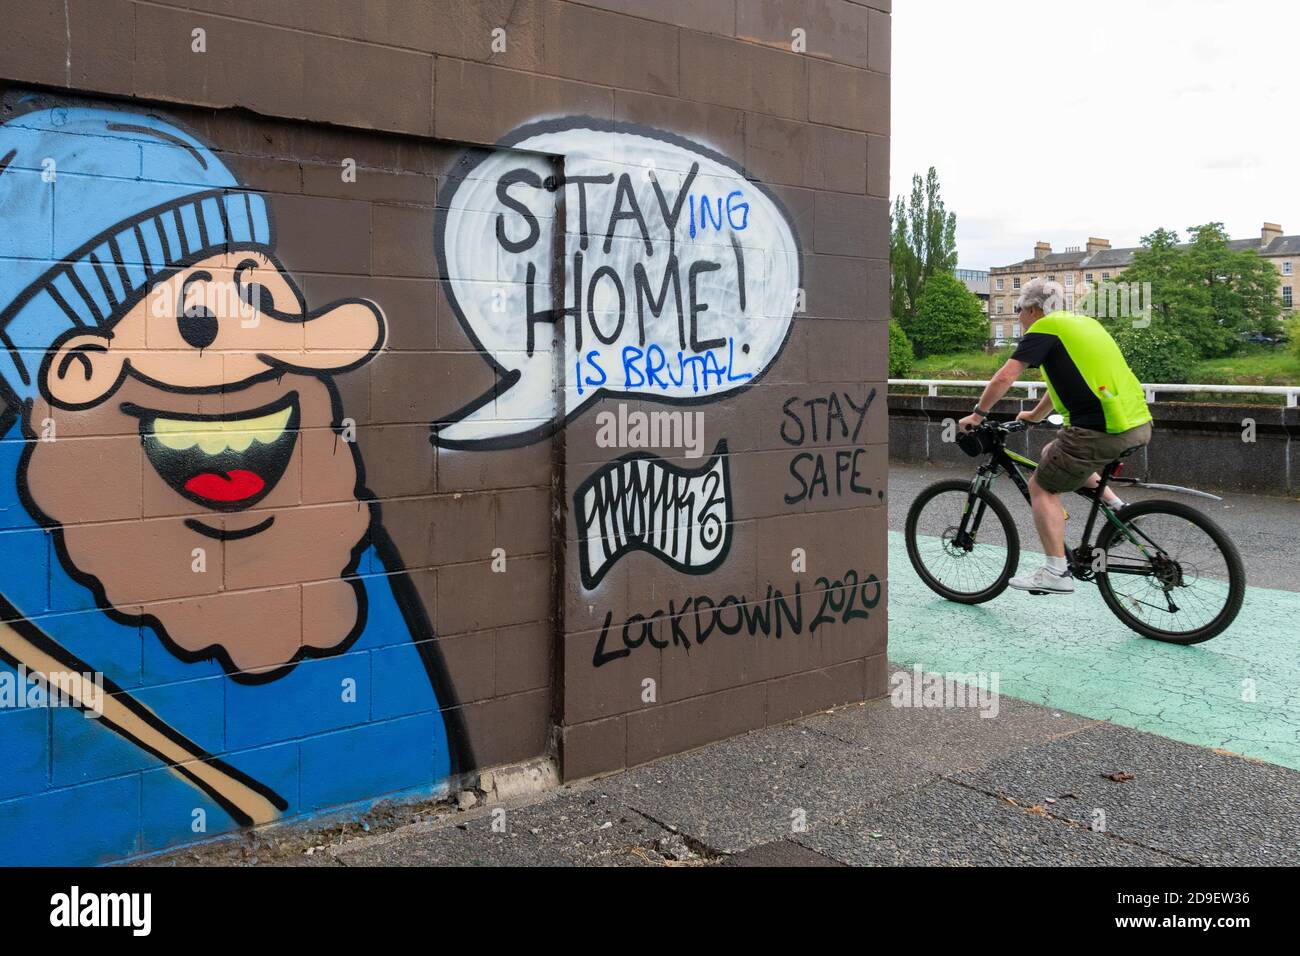 Psychische Gesundheit während des Lockdown - Stay Home Coronavirus Graffiti in Glasgow geändert zu "zu Hause zu bleiben ist brutal" Glasgow, Schottland, Großbritannien Juni 2020 Stockfoto